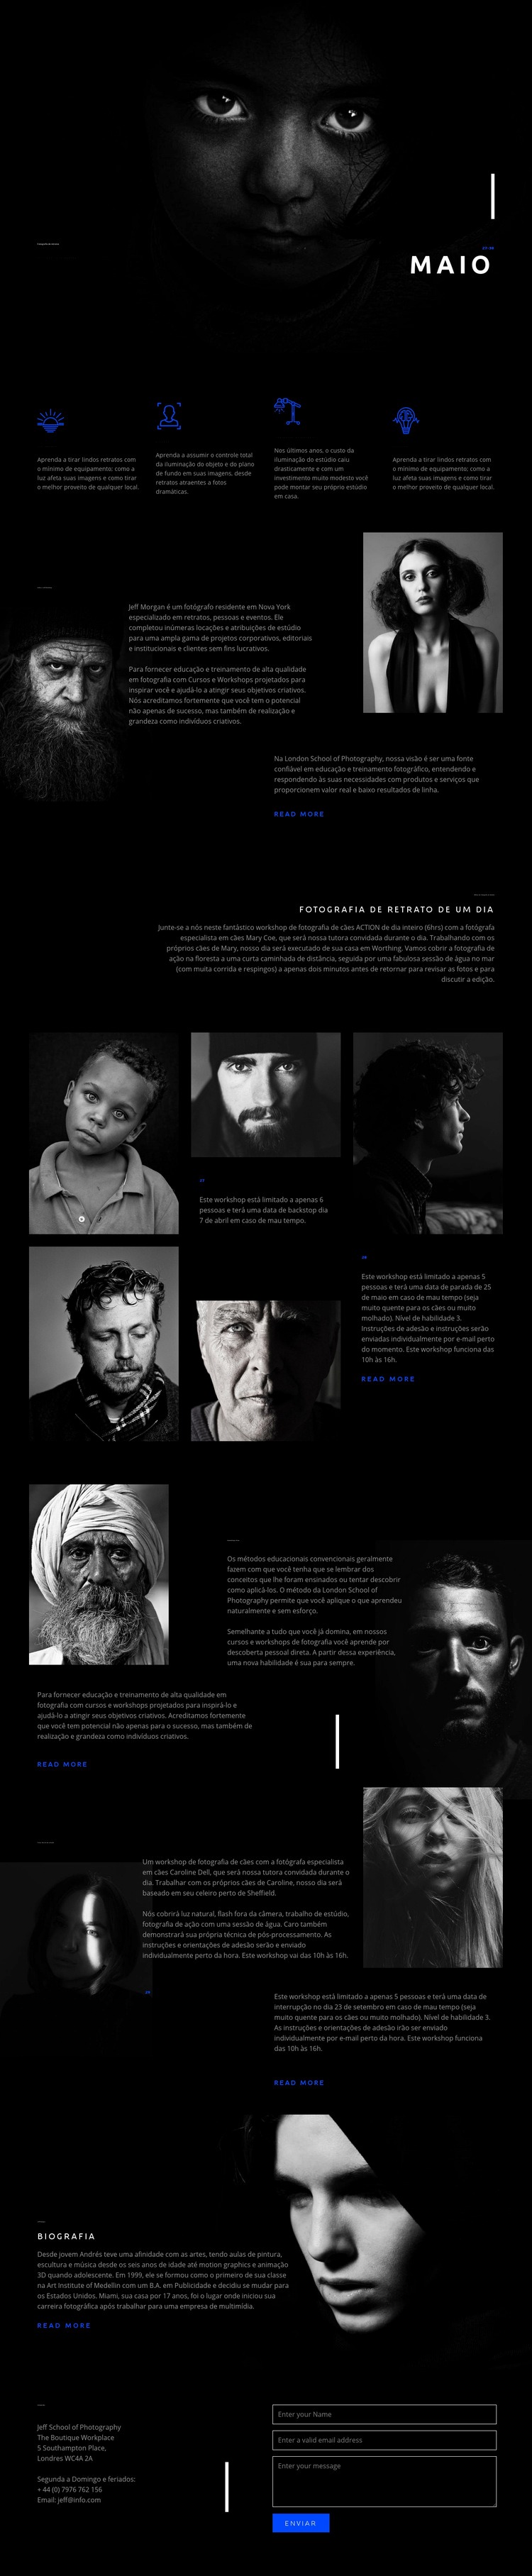 Retratos incríveis Design do site